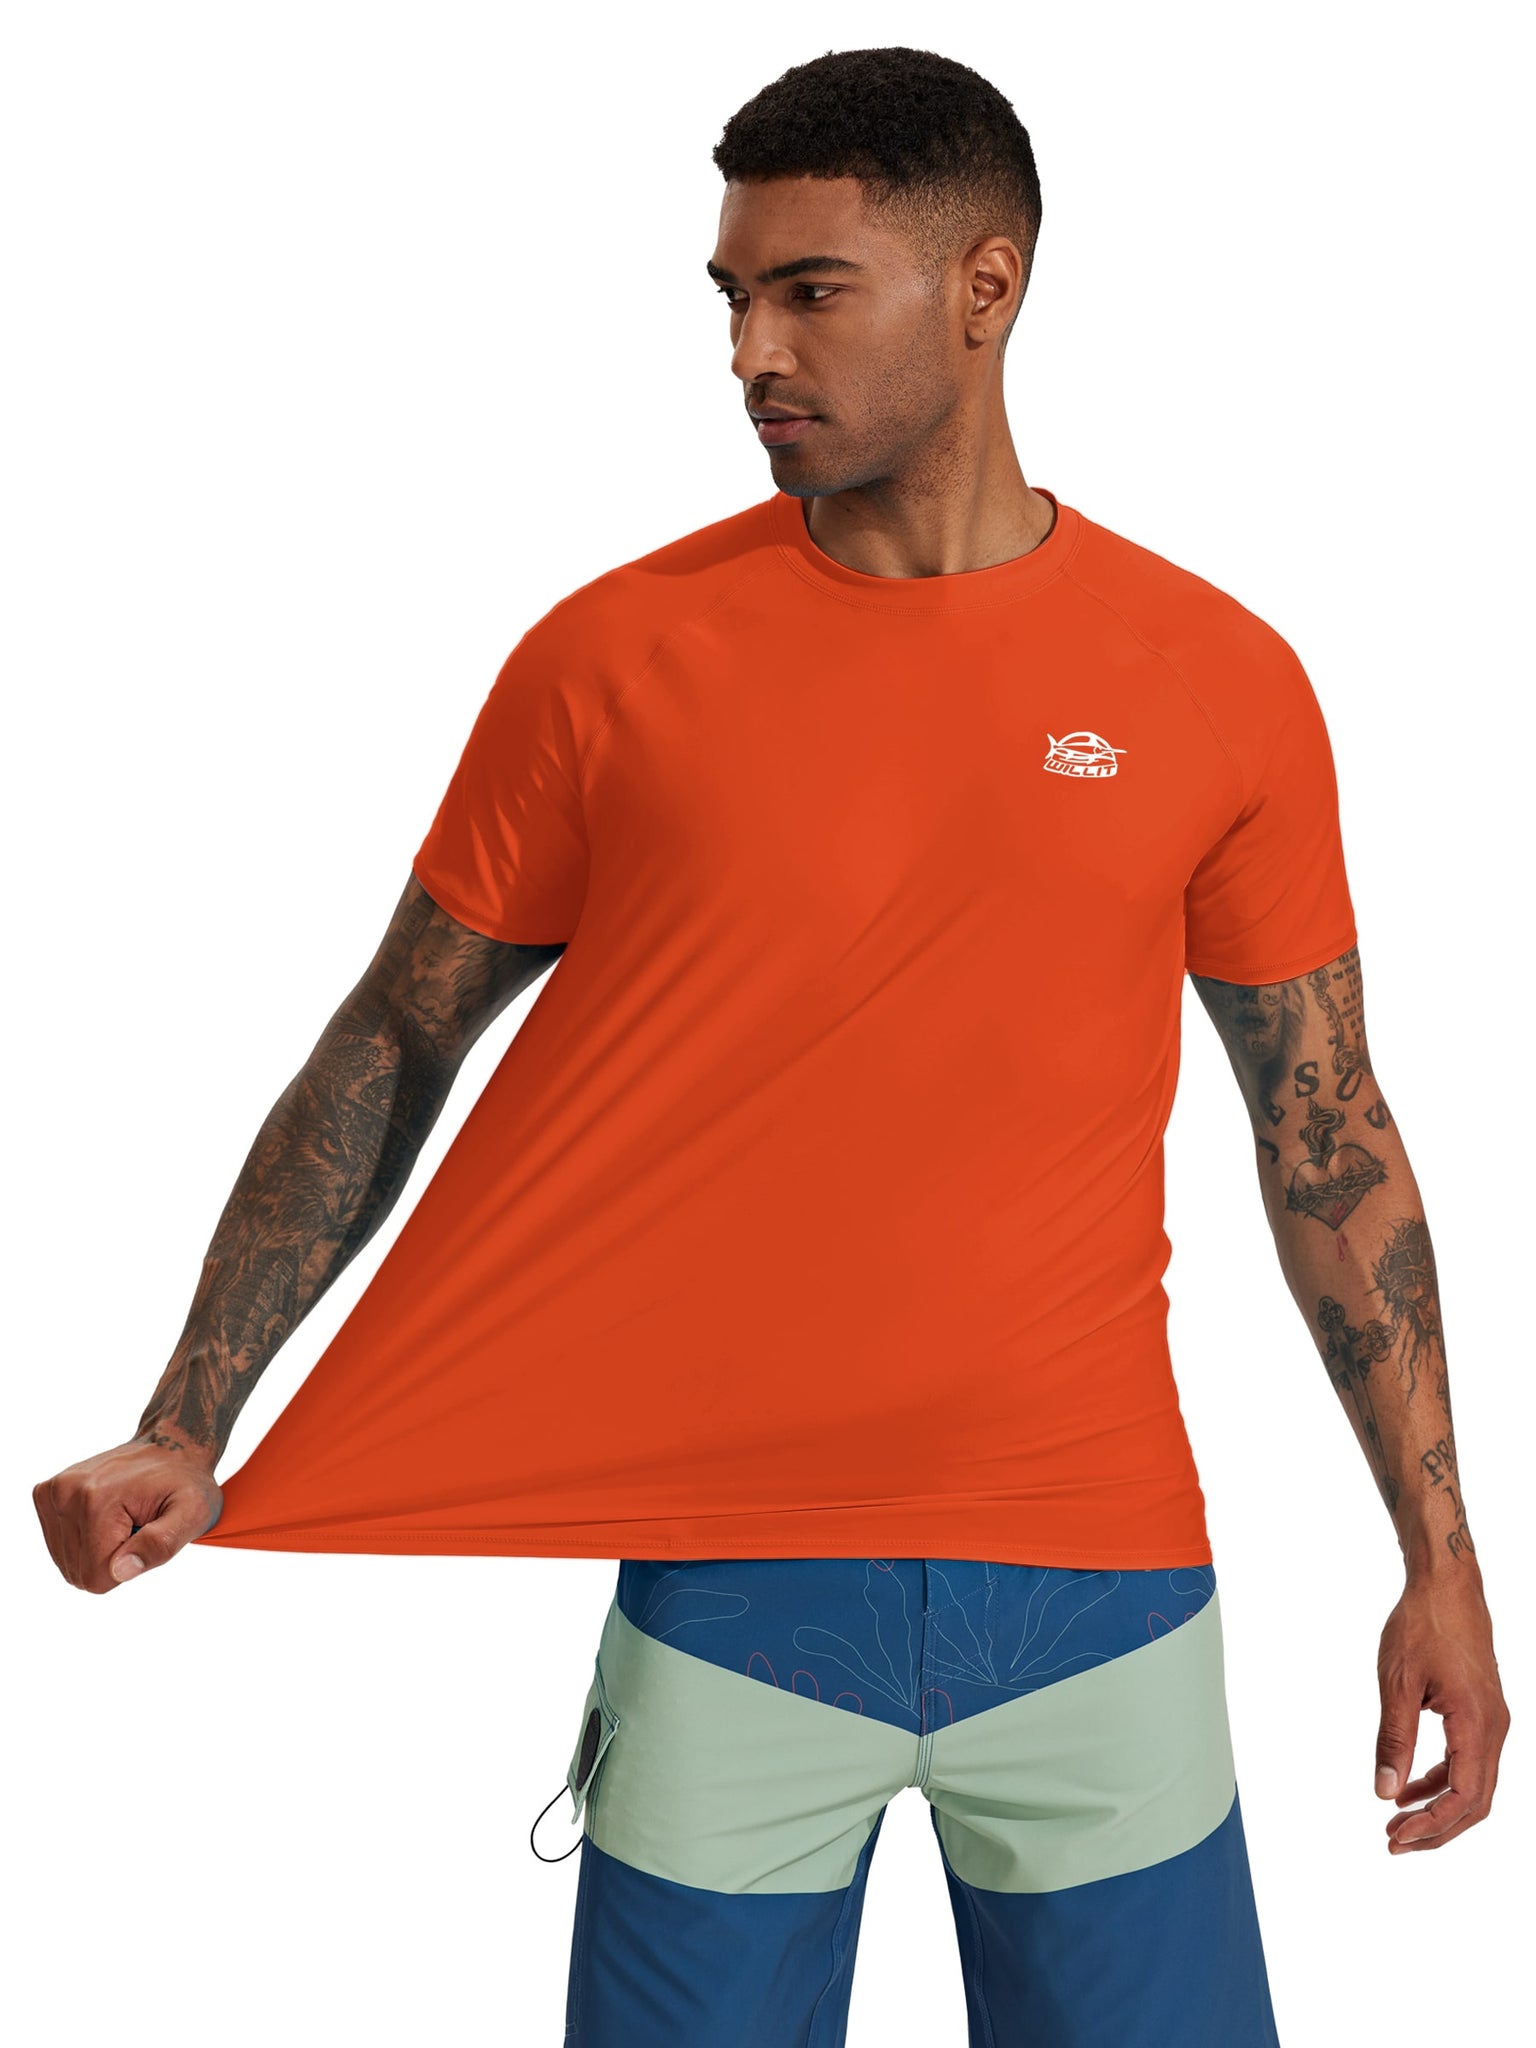 Men's Sun Protection Short Sleeve Shirt_Tangerine_model1